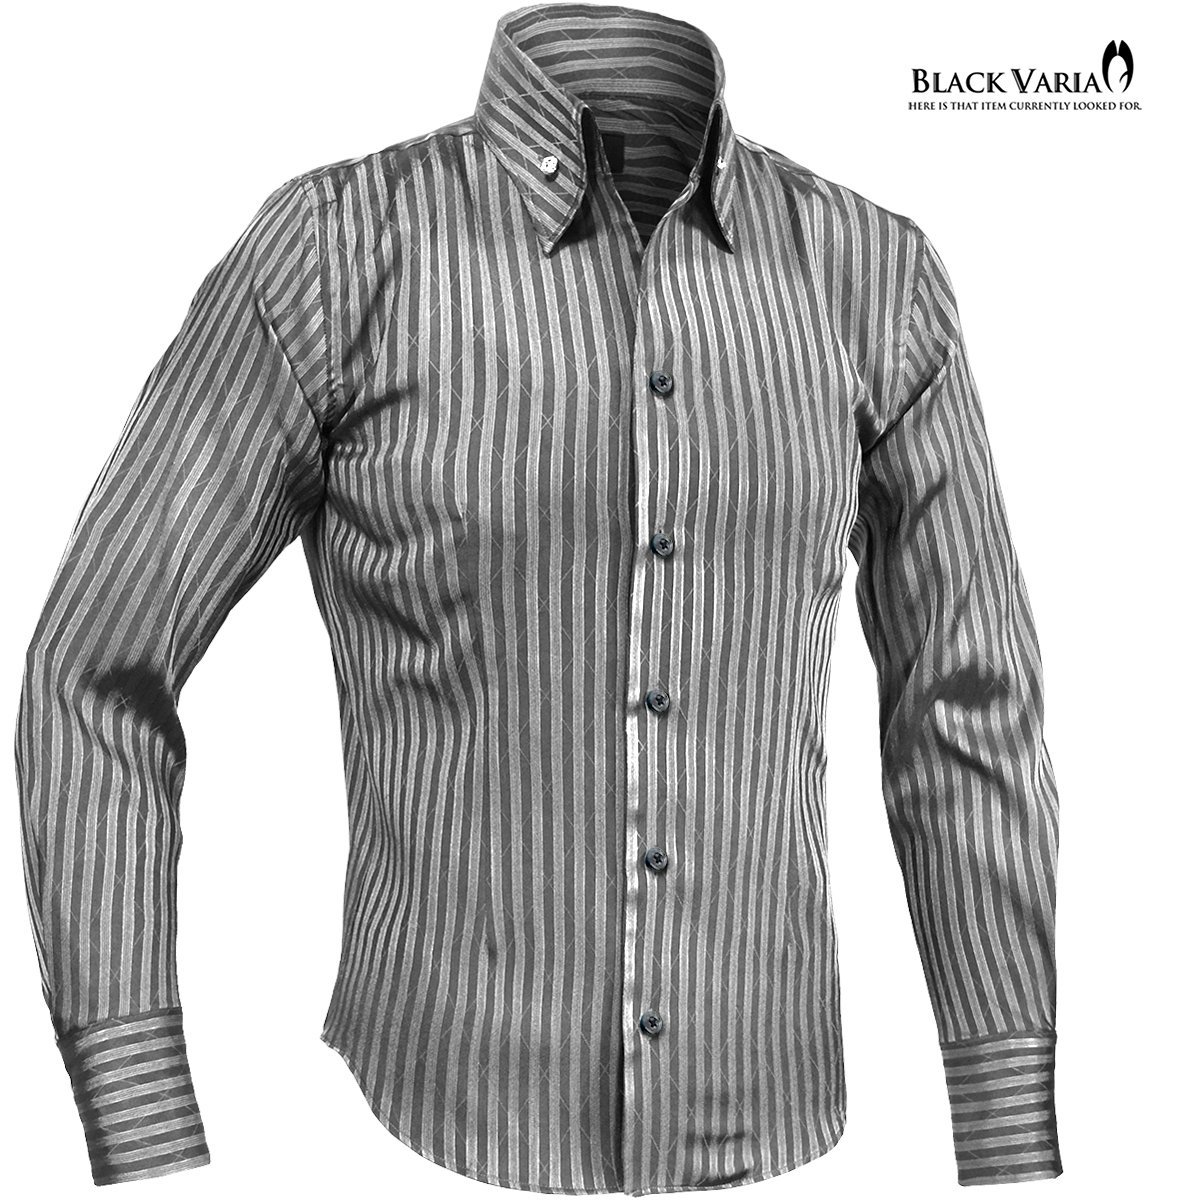 191852-gyS BLACK VARIA ストライプ織柄 スキッパー スワロフスキー ドレスシャツ スリム メンズ(ブラックダイヤ釦 グレー灰シルバー銀) XL_ブラックダイヤ釦